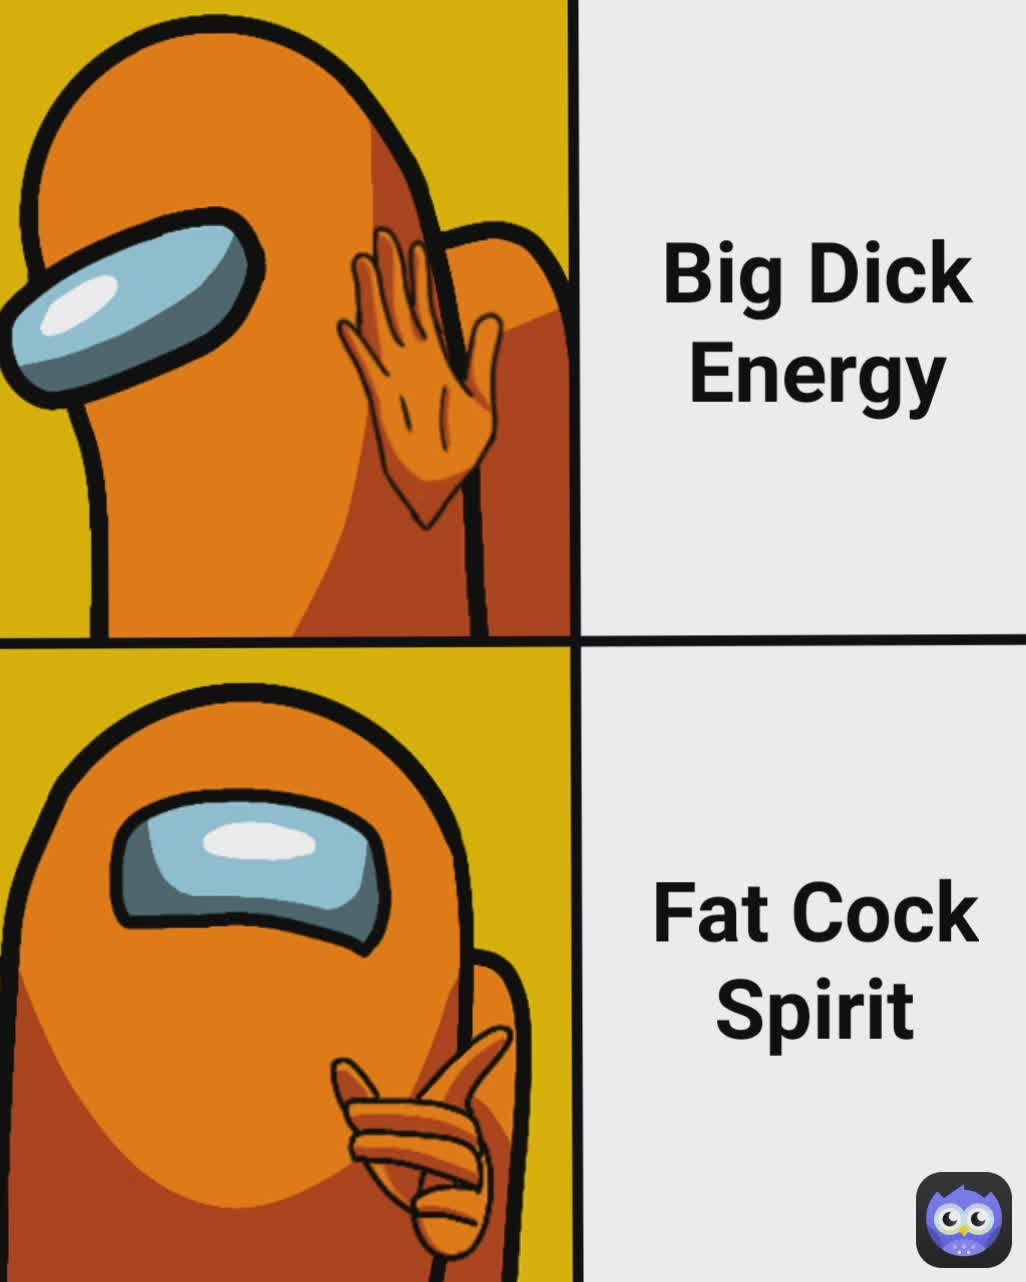 big dick meme